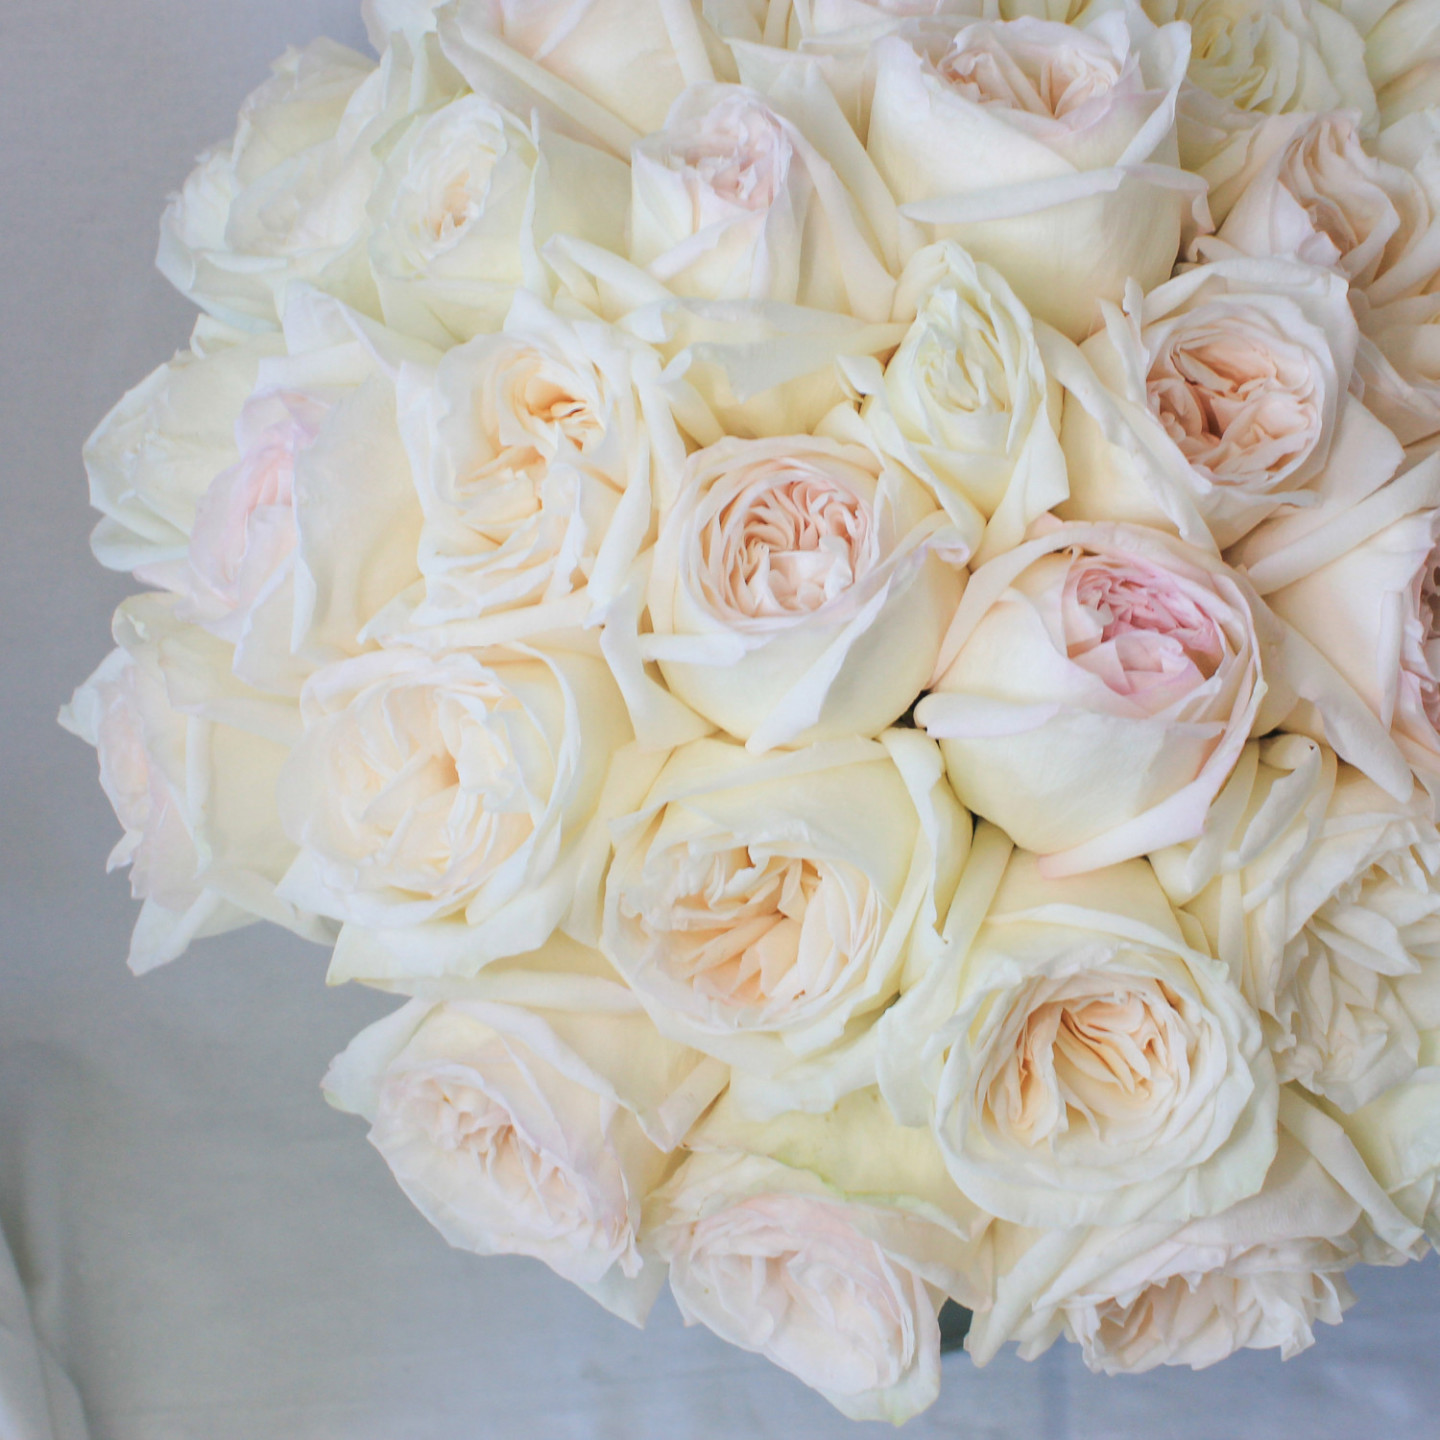 36 White O'hara Garden Roses Bouquet